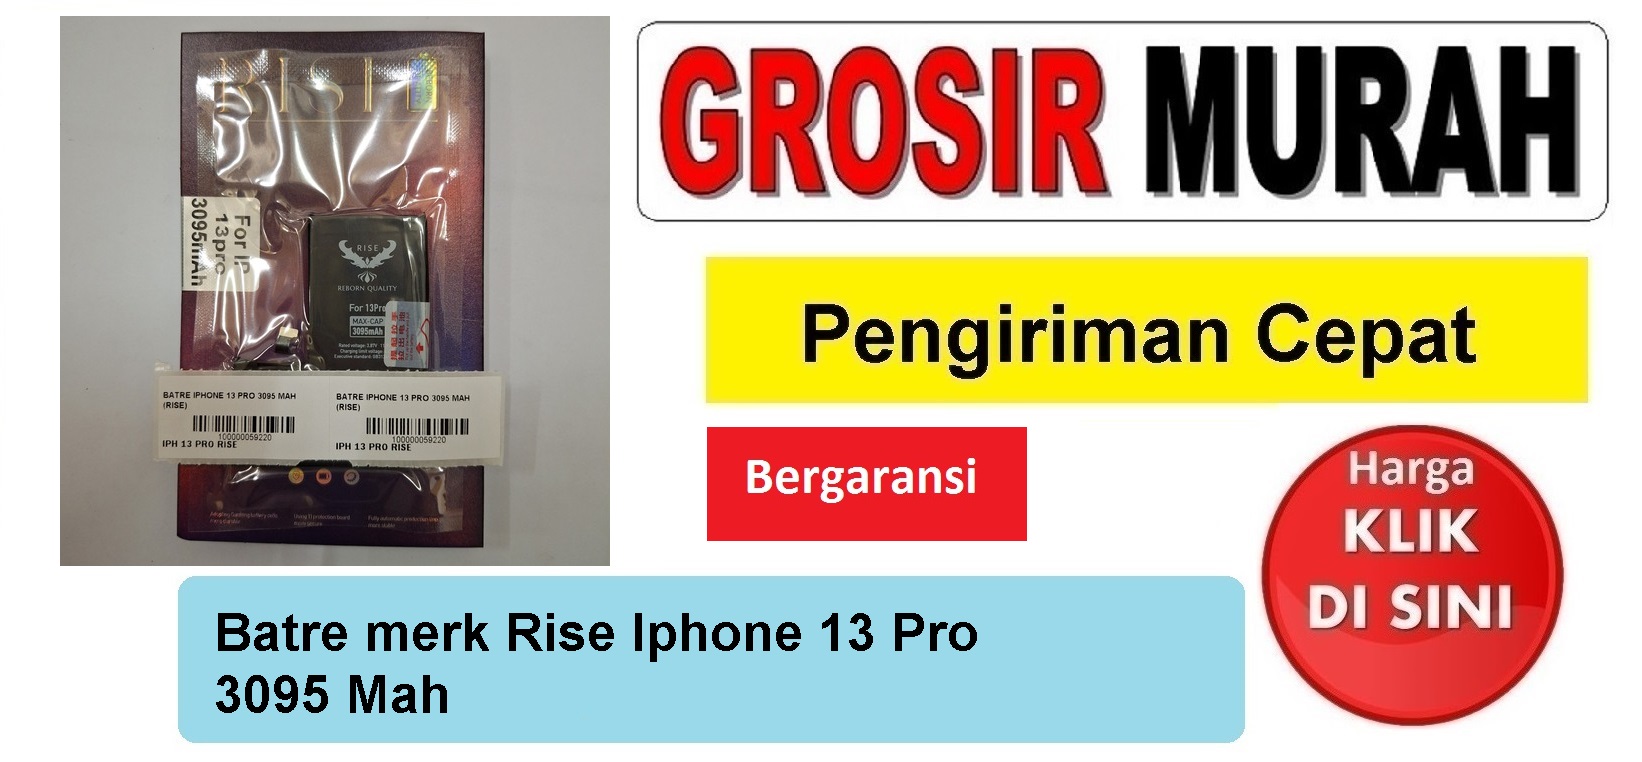 Batre merk Rise Iphone 13 Pro 3095 Mah Baterai Battery Bergaransi Batere